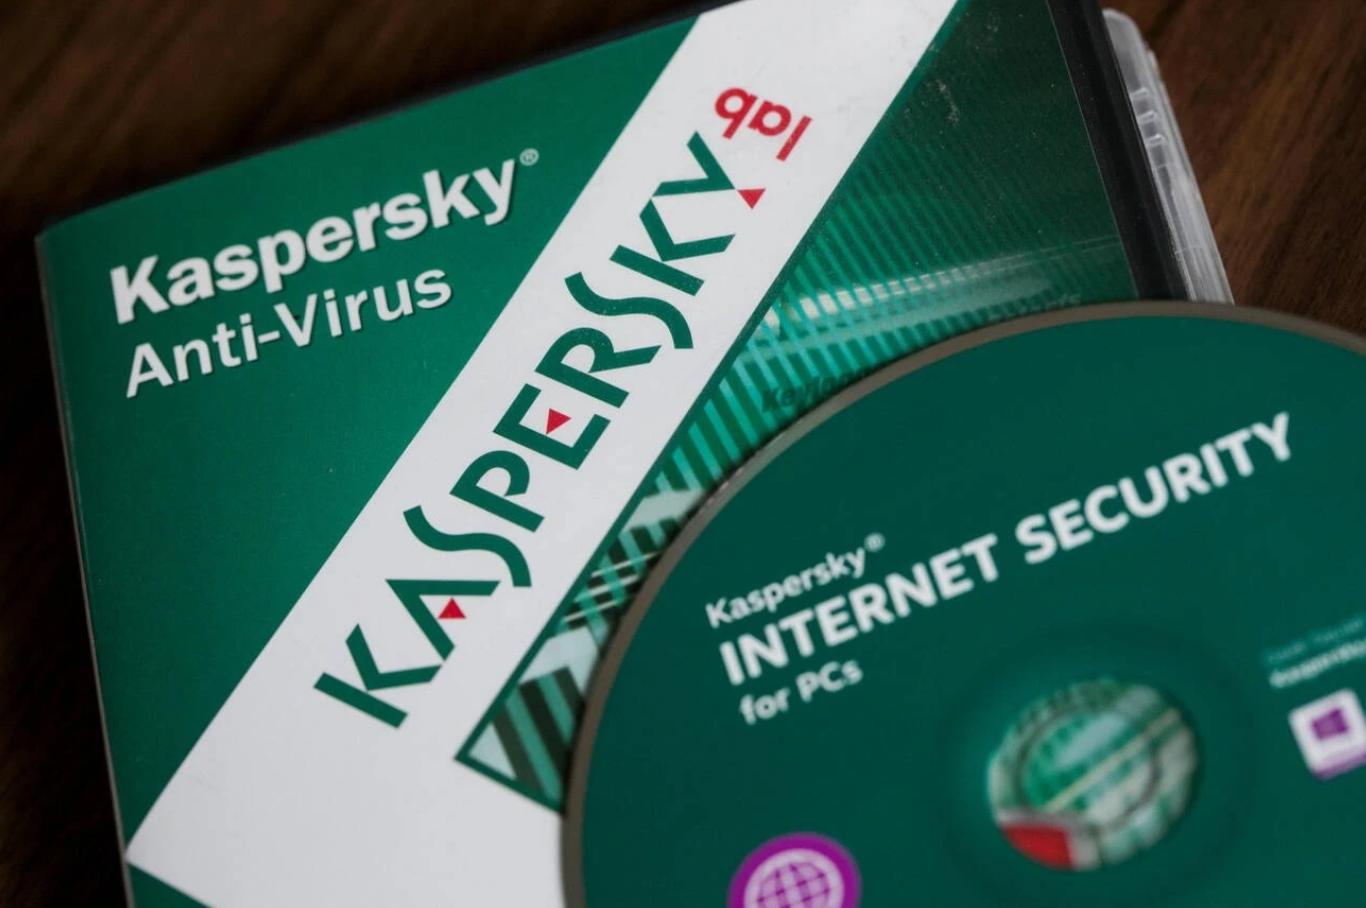 Phần mềm diệt virus nổi tiếng vừa bị cấm trên toàn nước Mỹ